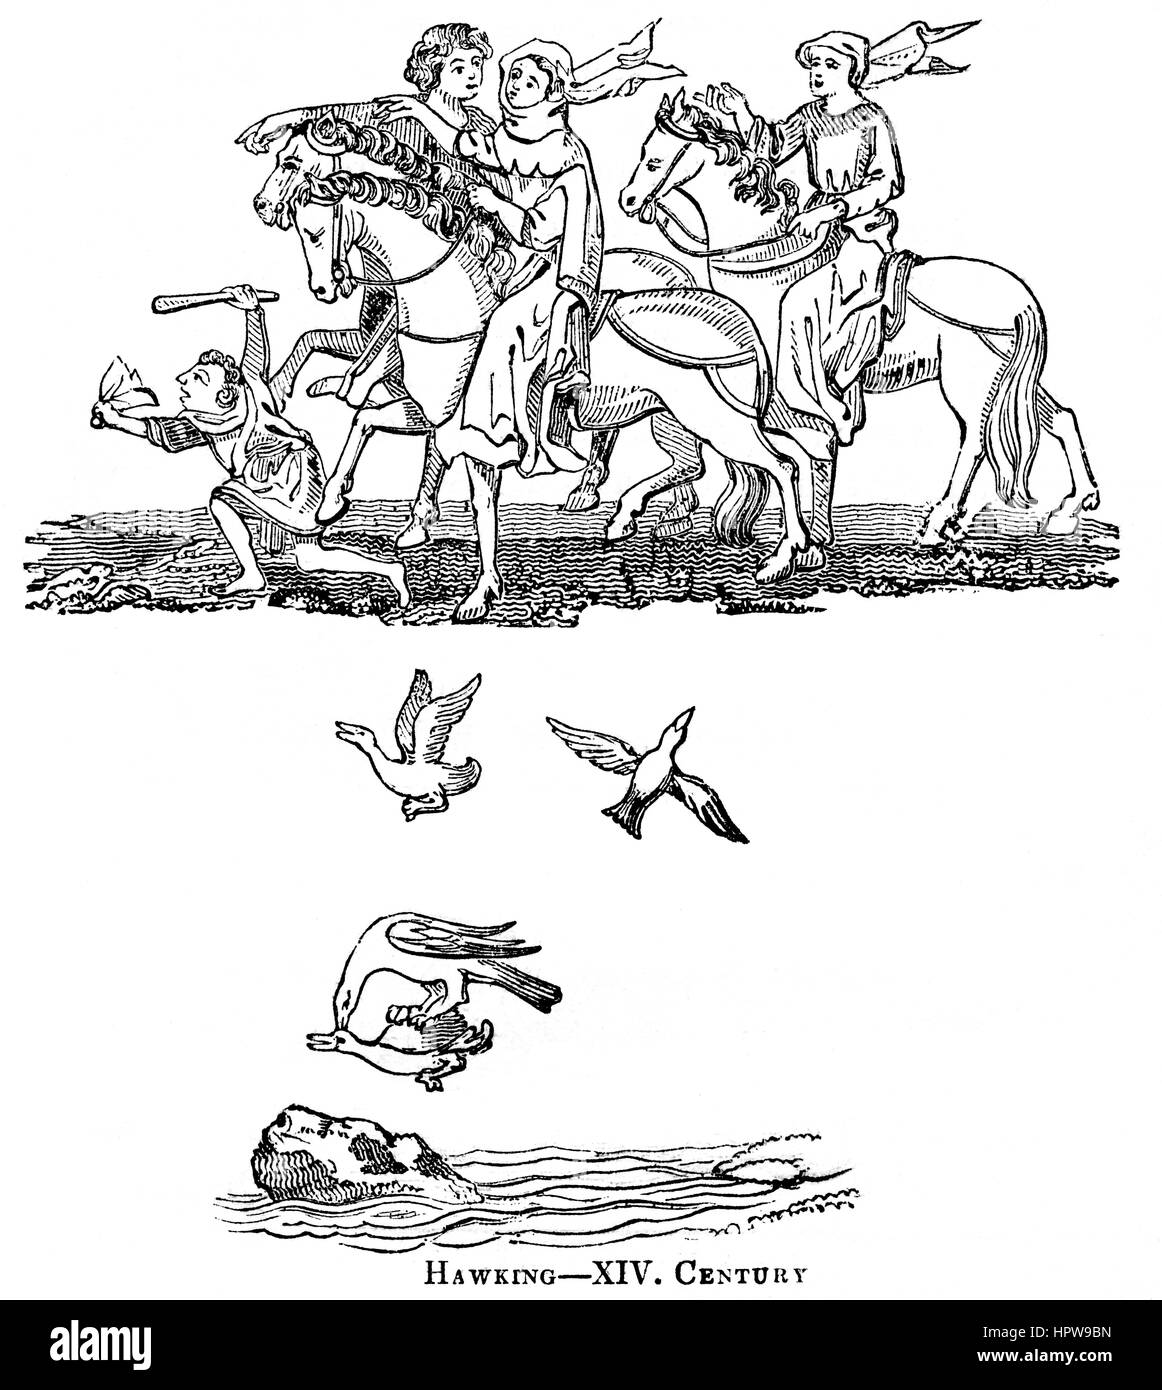 Une illustration de Hawking dans le 14e siècle numérisées à haute résolution à partir d'un livre imprimé en 1831. Croyait libres de droit. Banque D'Images